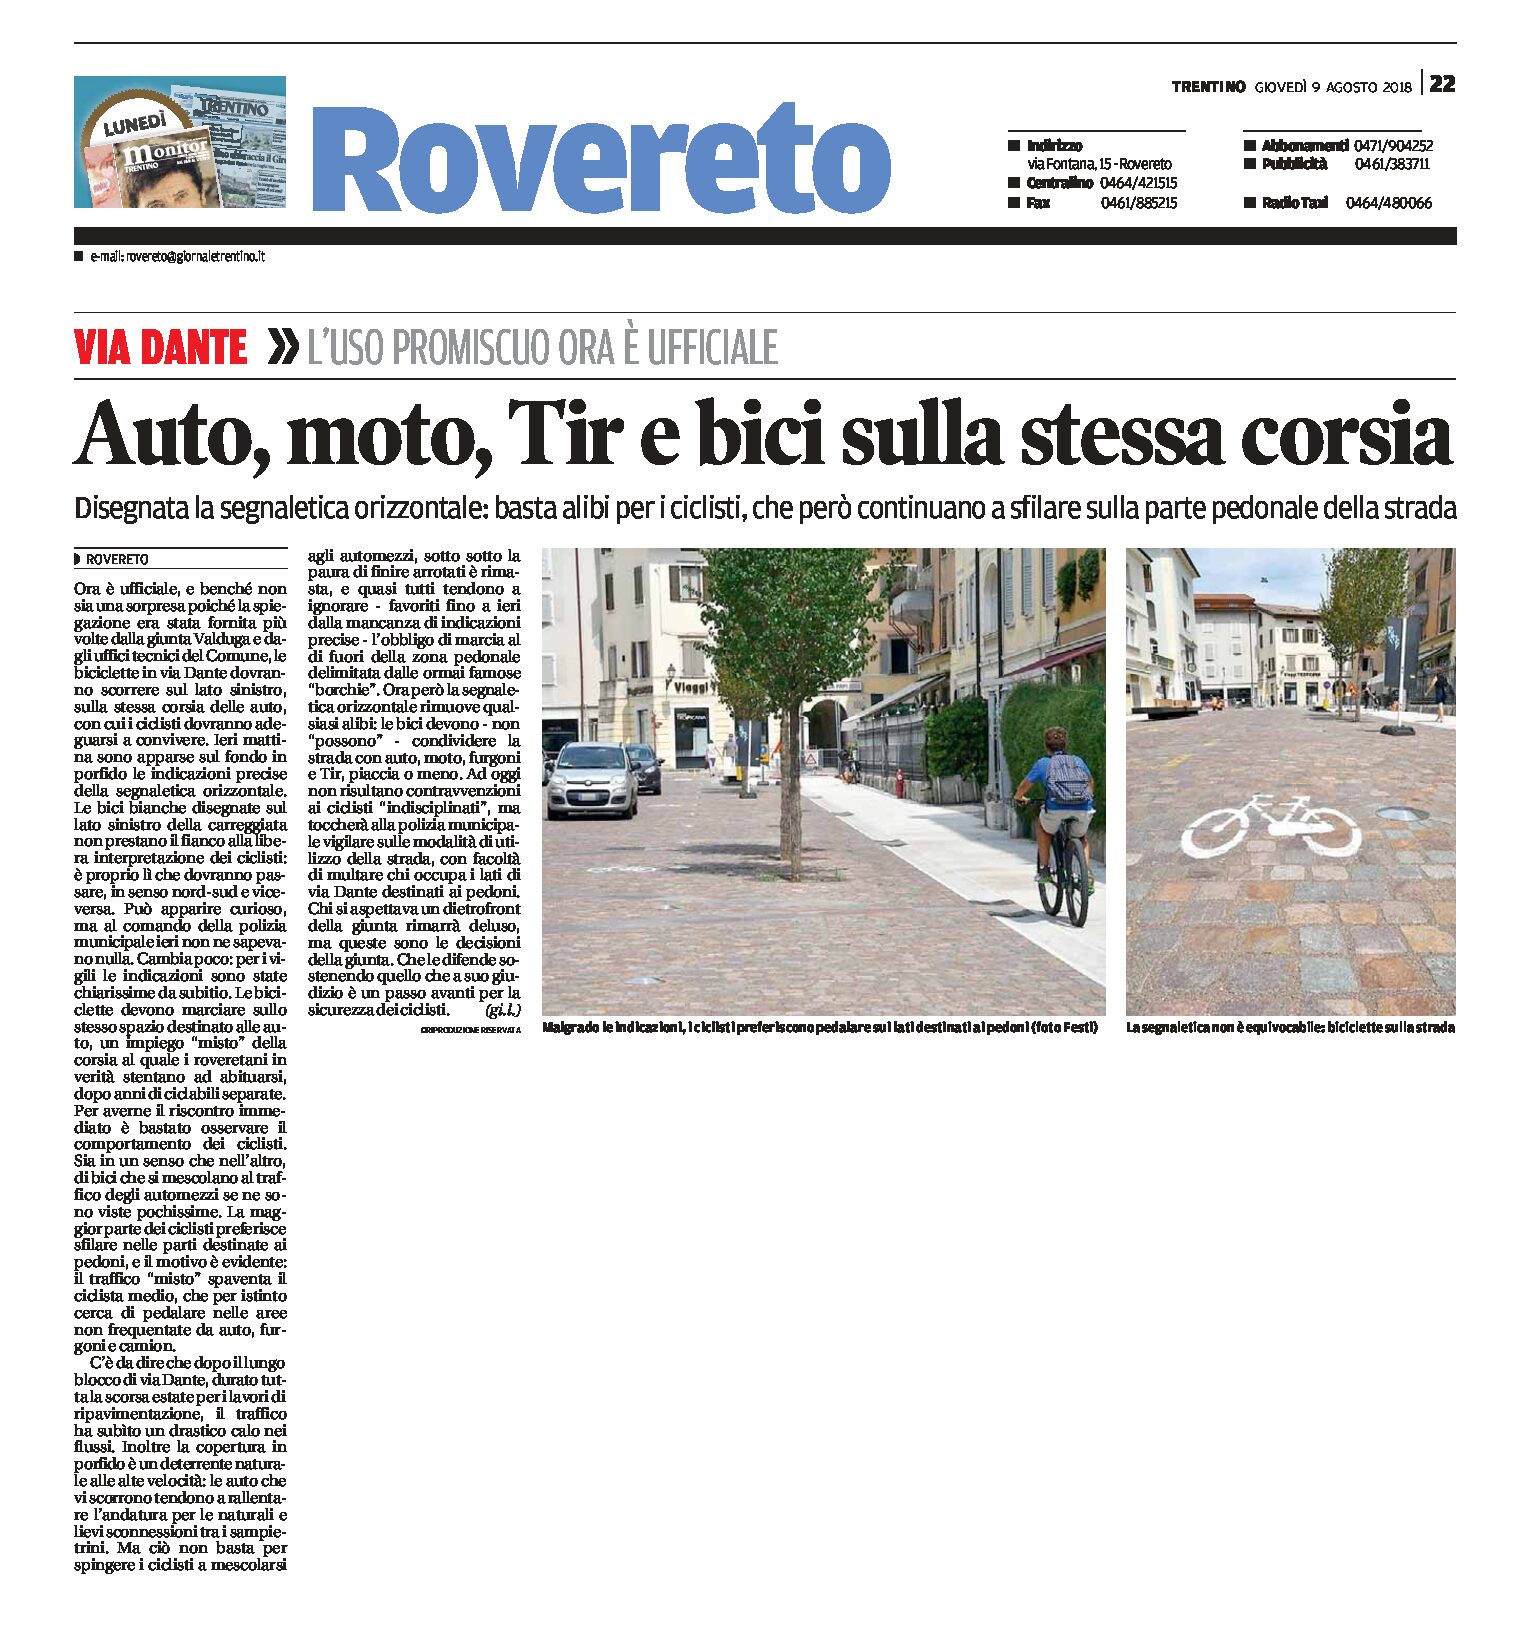 Rovereto, via Dante: auto, moto, Tir e bici sulla stessa corsia. Disegnata la segnaletica orizzontale